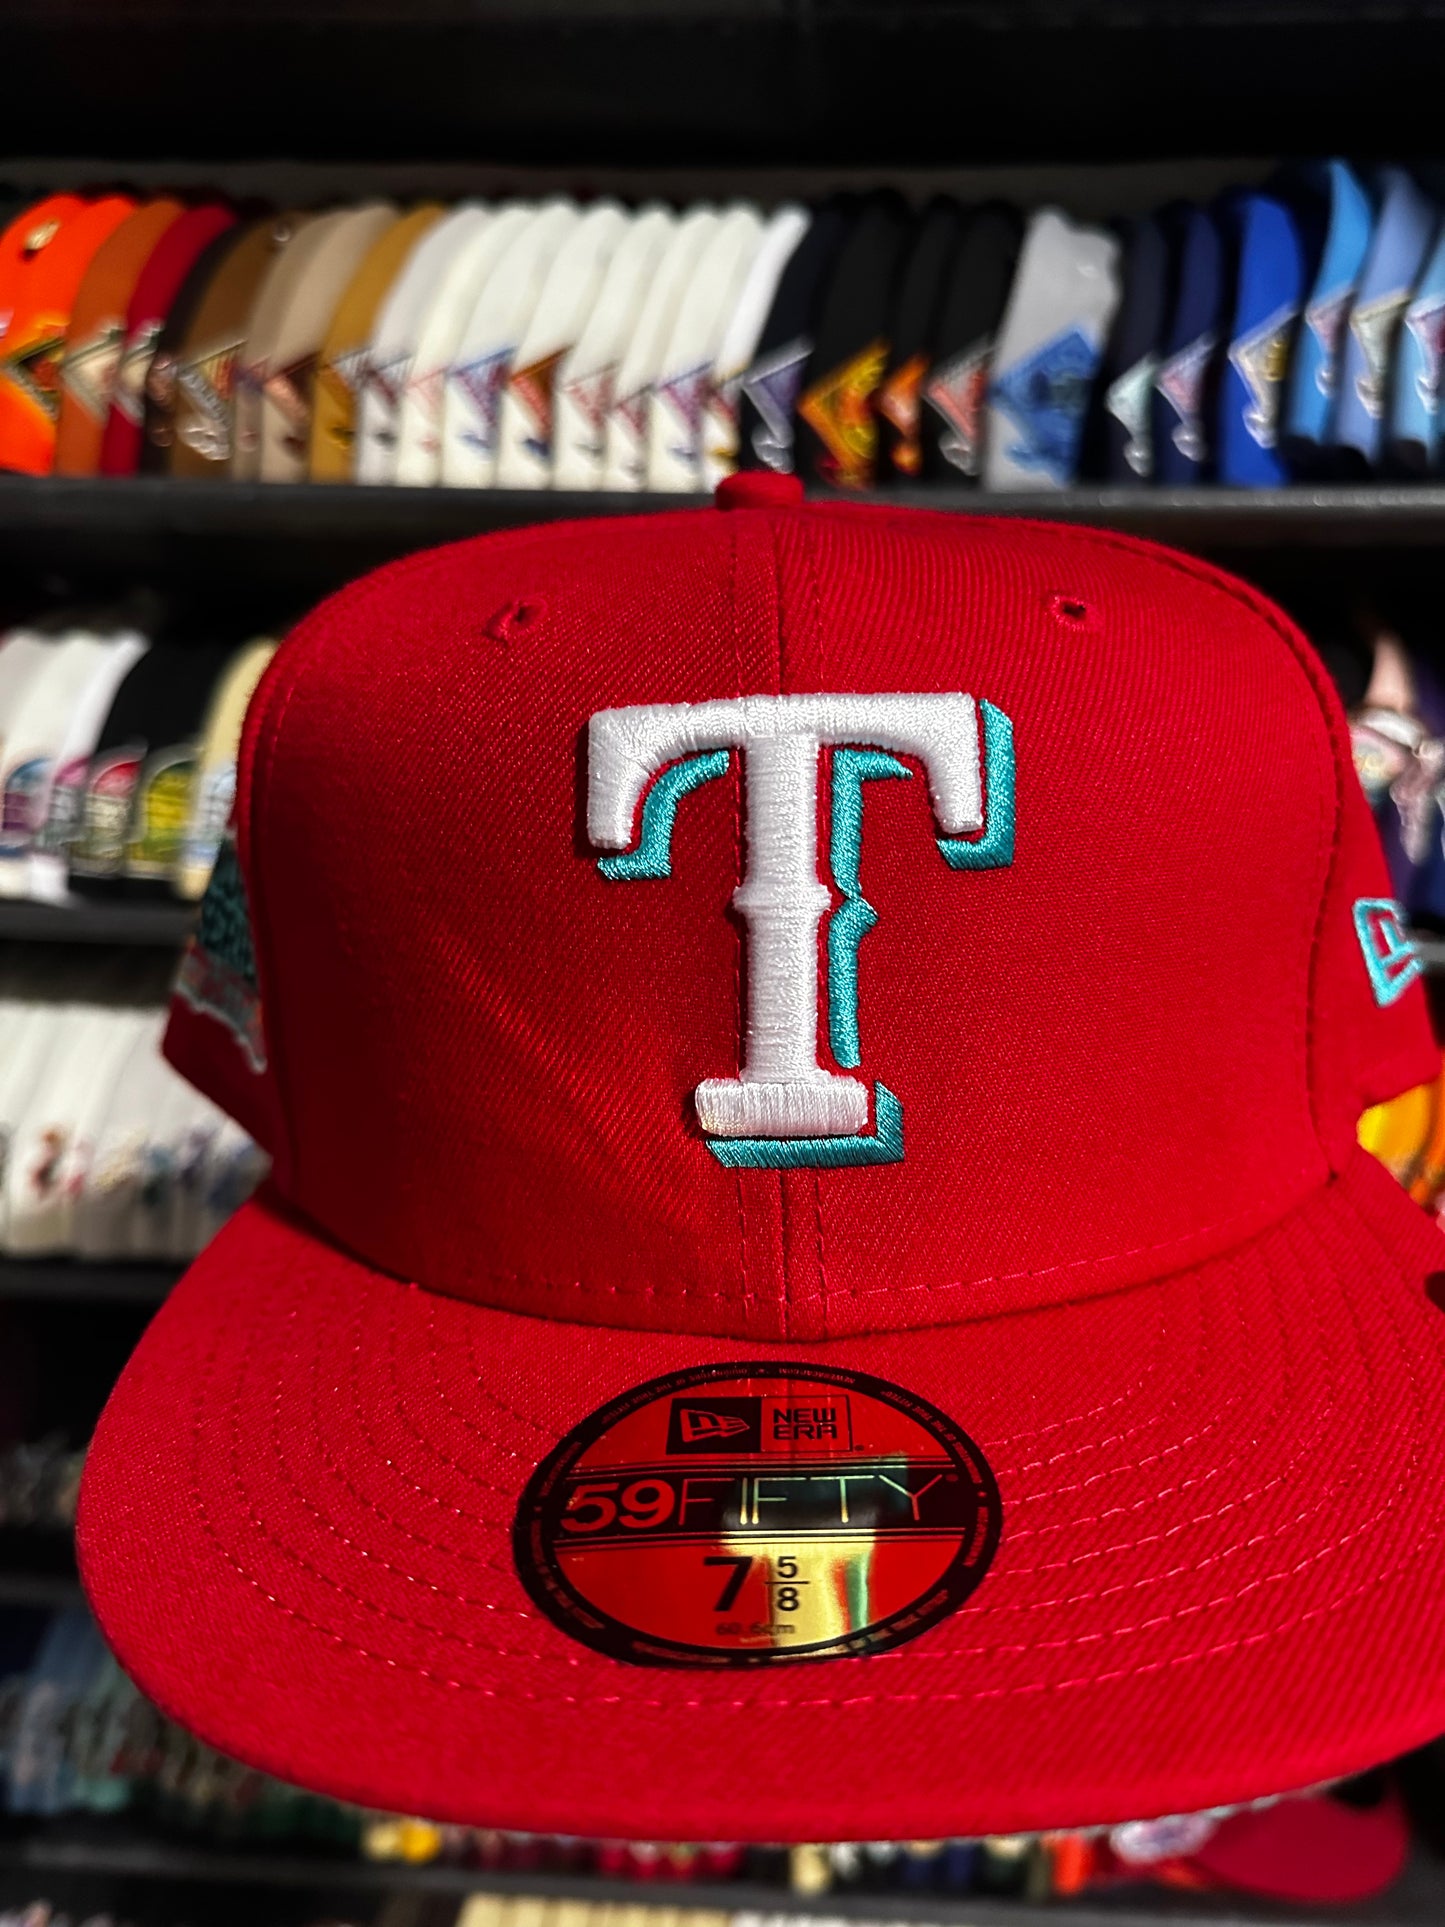 Lids Texas Rangers “Captain Planet”